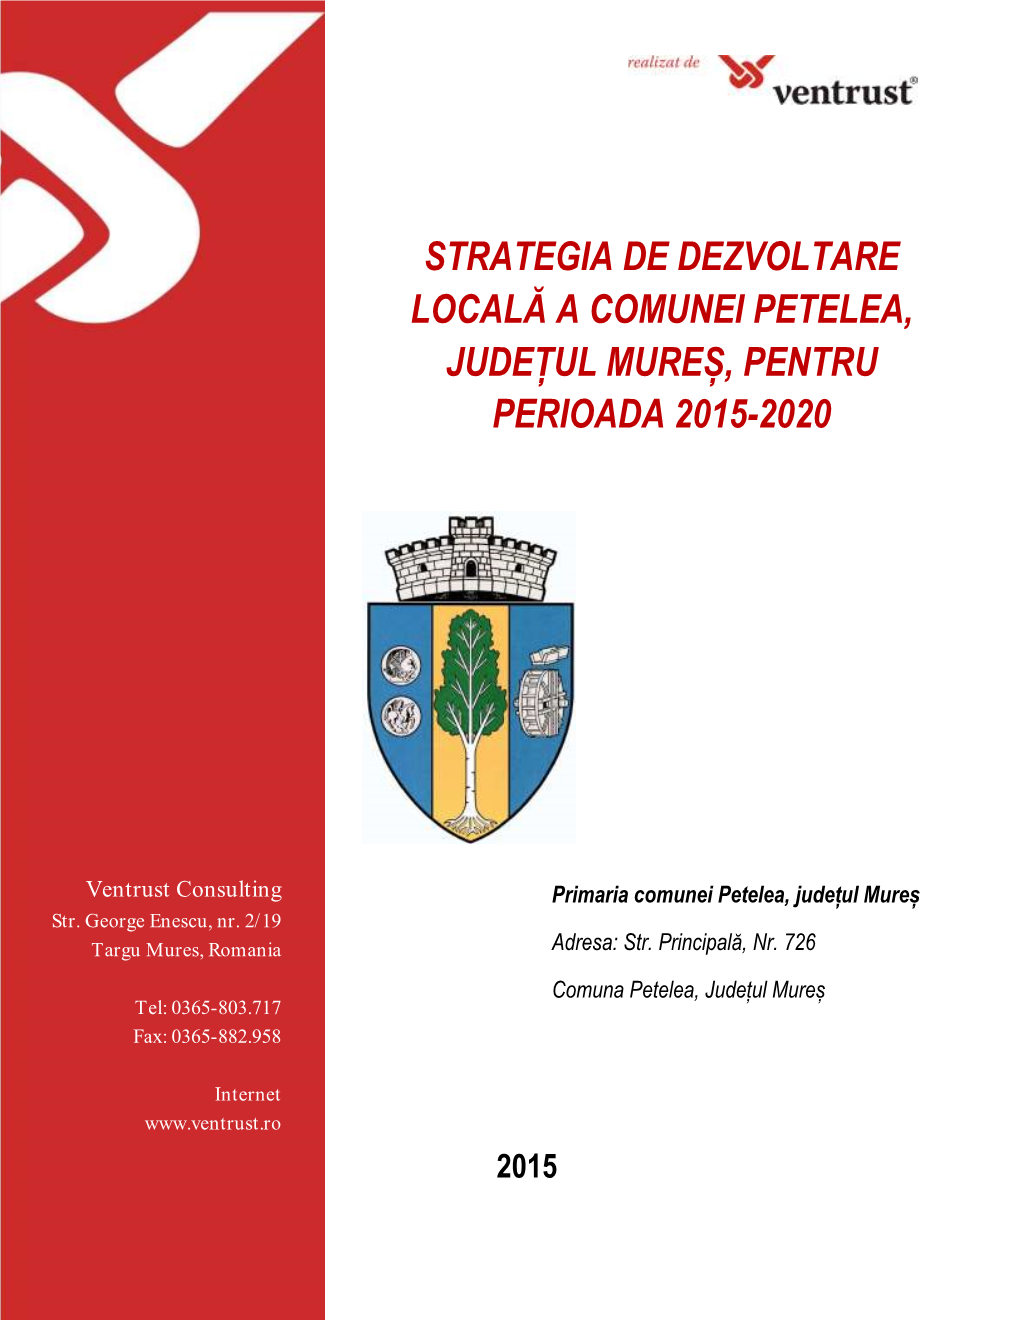 Strategia De Dezvoltare Locala a Comunei Petelea, Judetul Mures 2015-2020